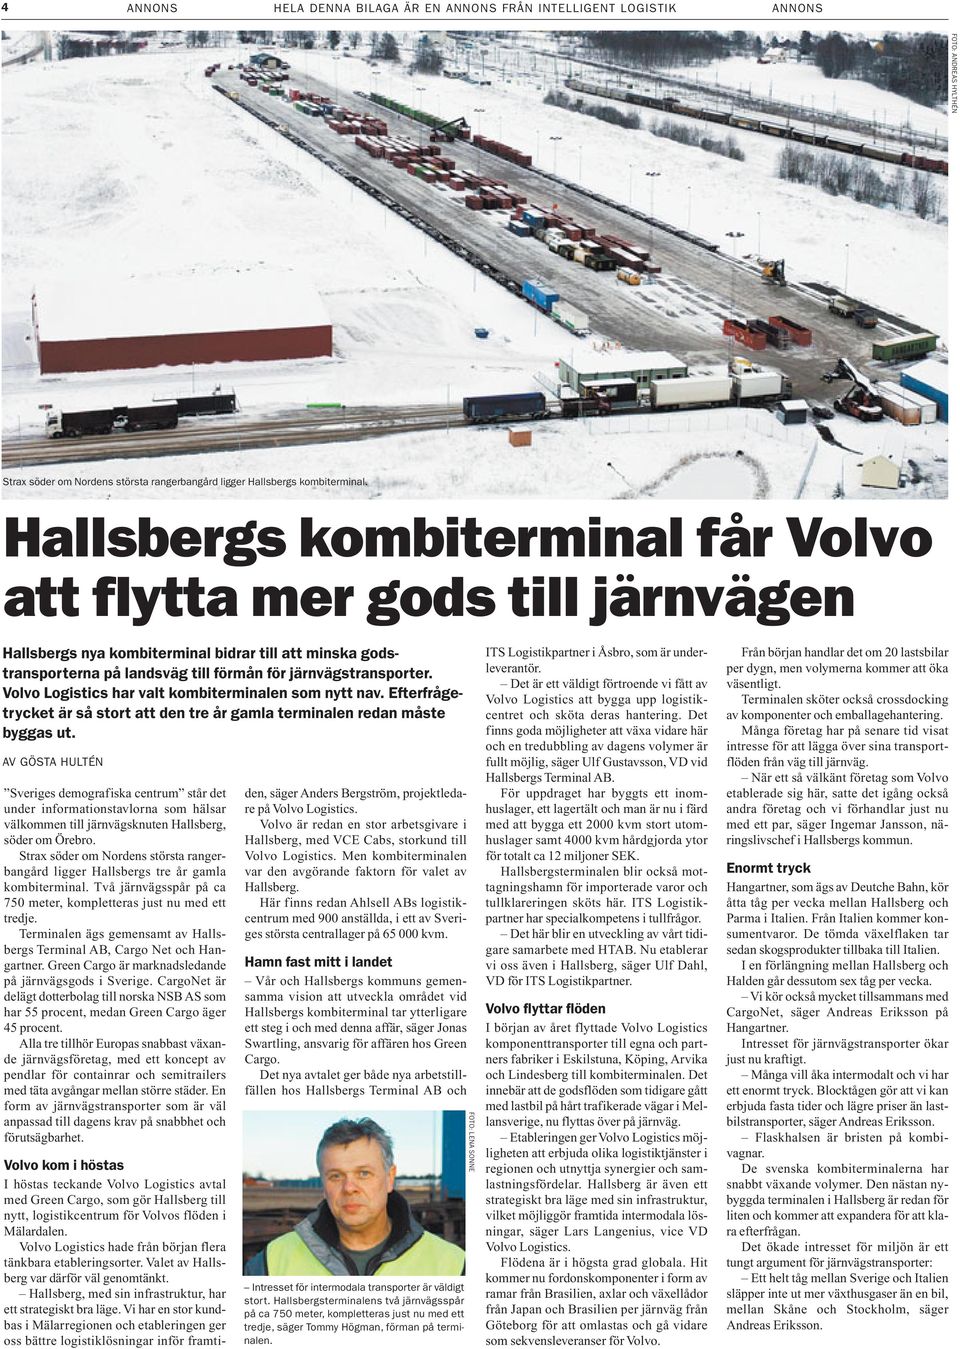 Volvo Logistics har valt kombiterminalen som nytt nav. Efterfrågetrycket är så stort att den tre år gamla terminalen redan måste byggas ut.